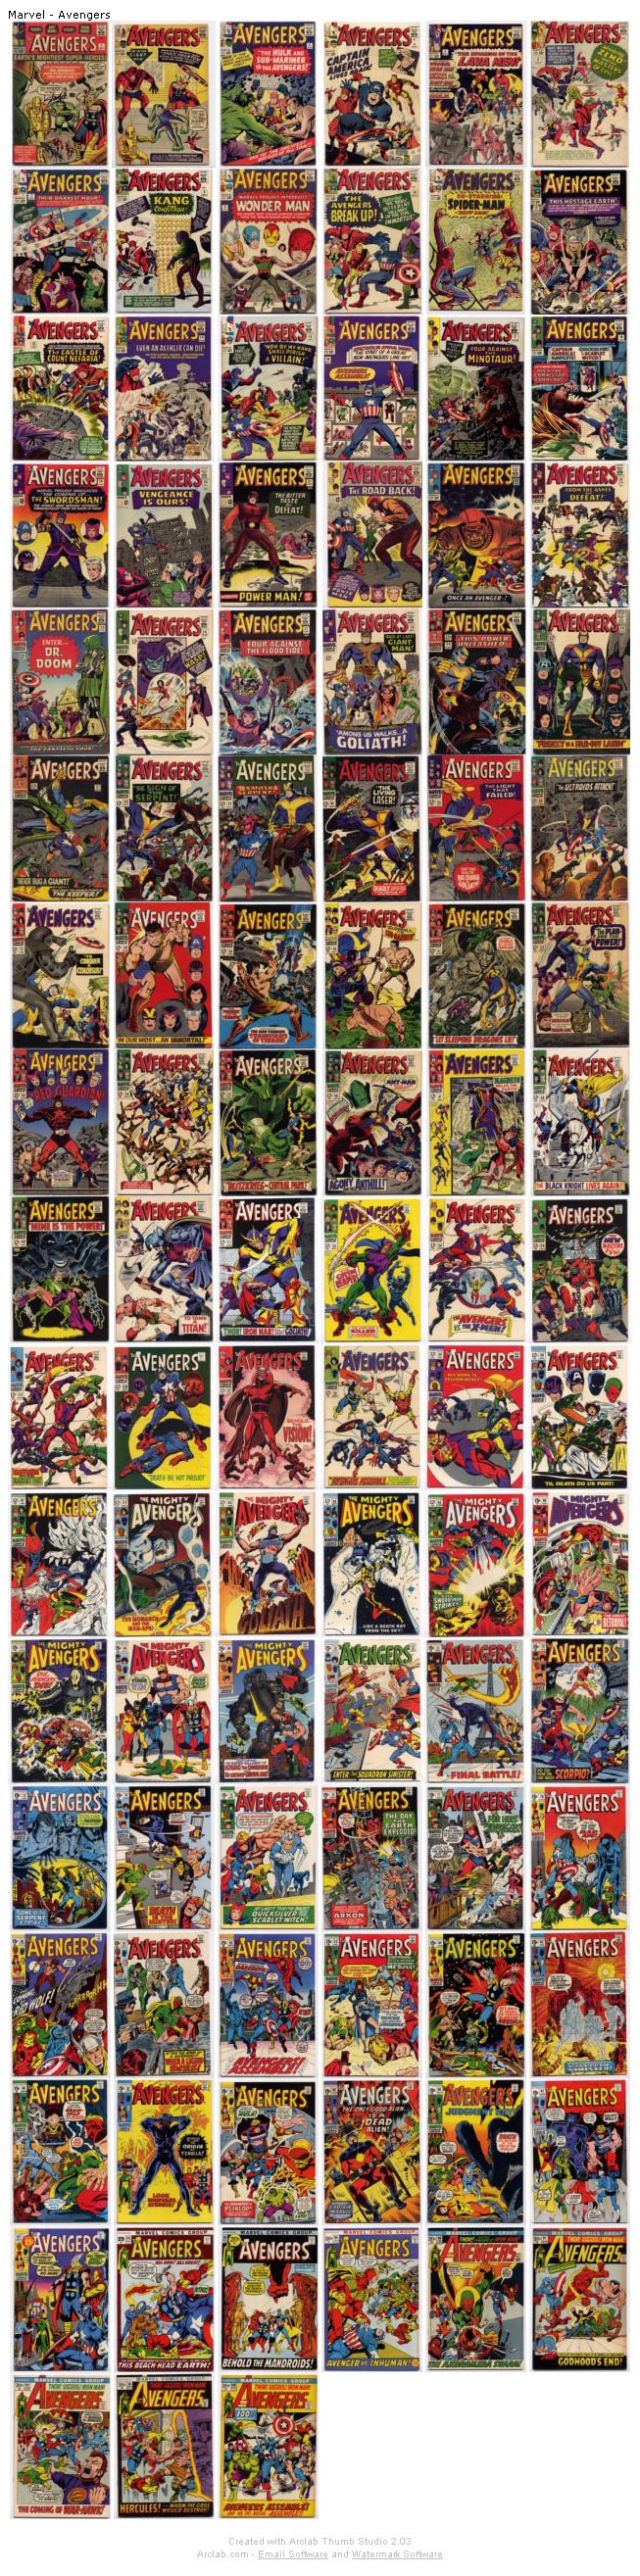 Avengers1-100.jpg